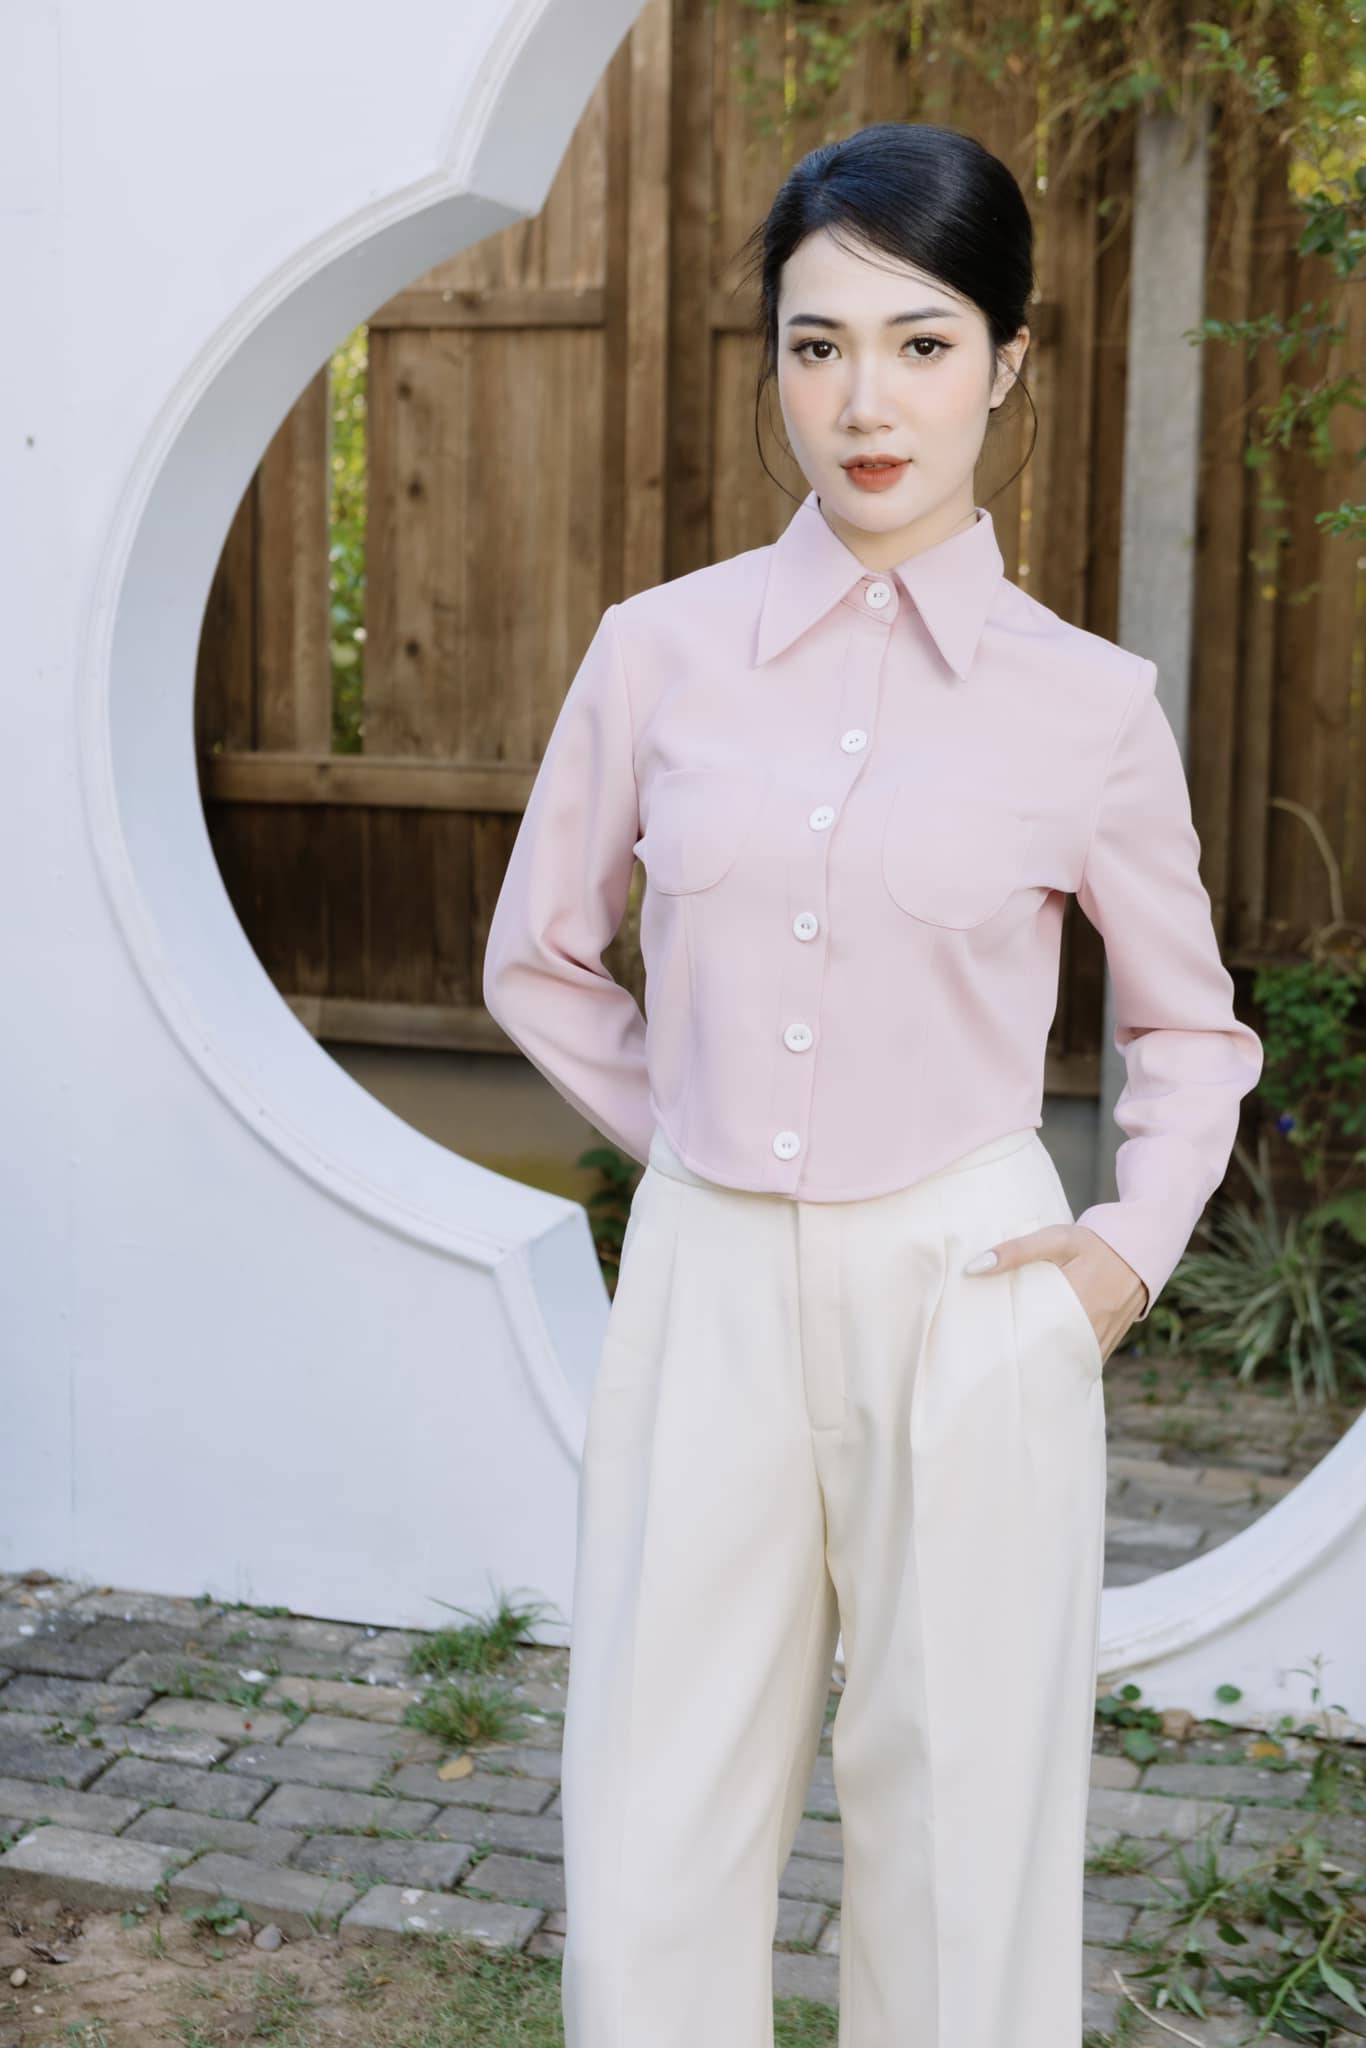 "Con gái đại gia nghìn tỷ phim Việt" dáng đẹp như người mẫu, chuộng mặc tôn hình thể - 7